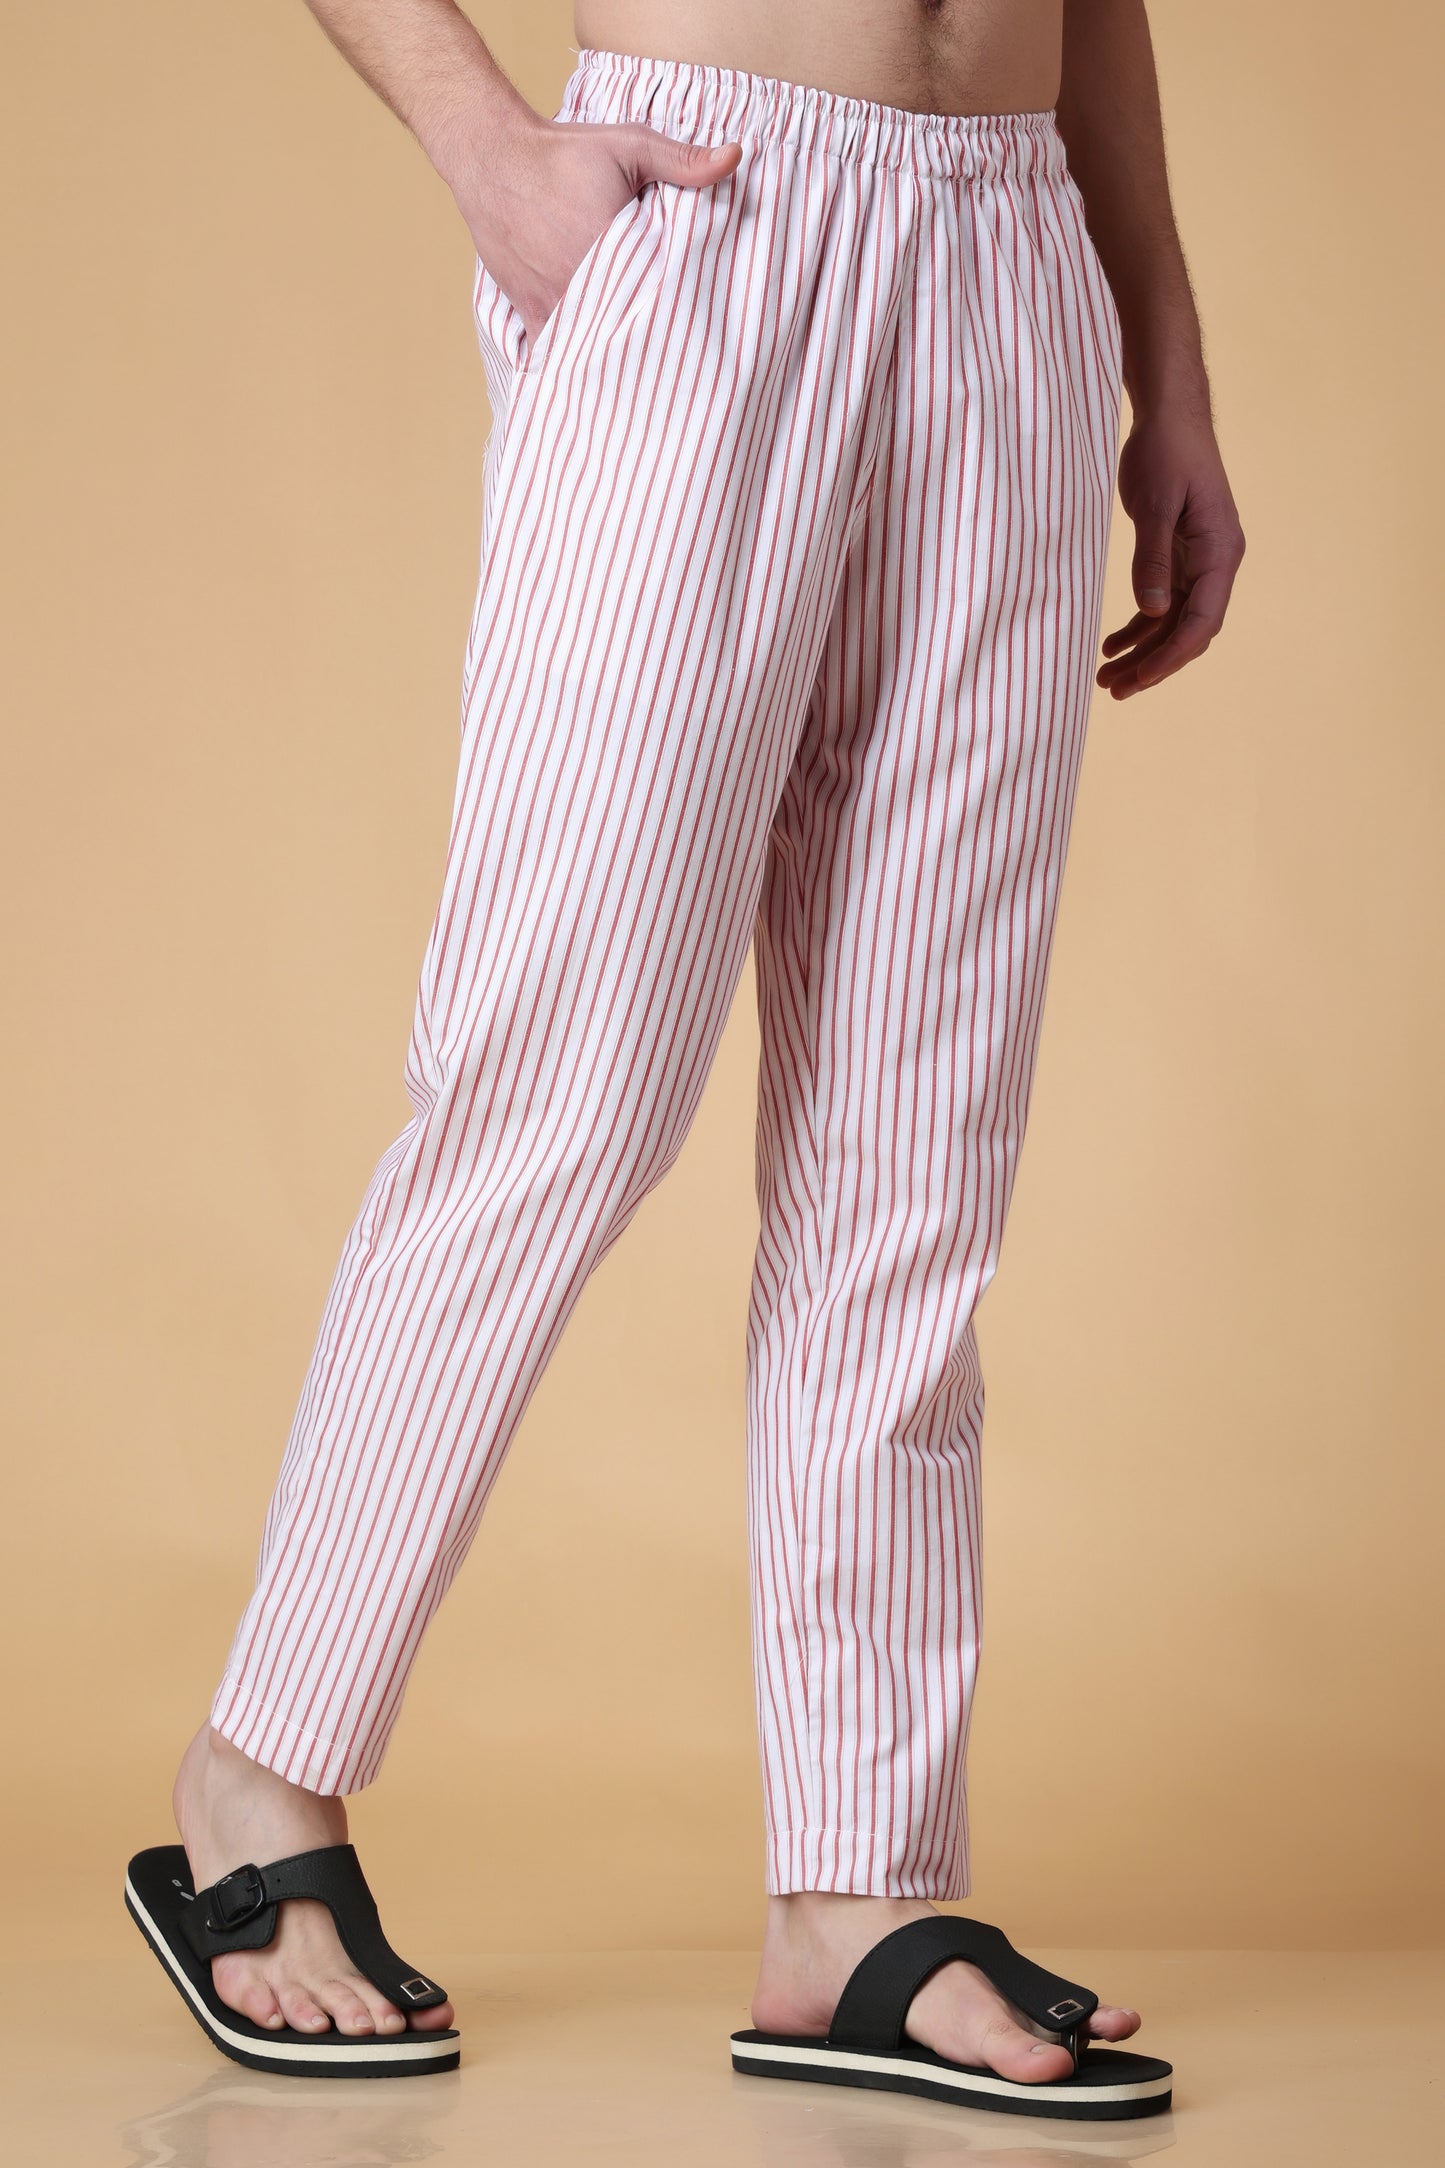 Striped Pajamas